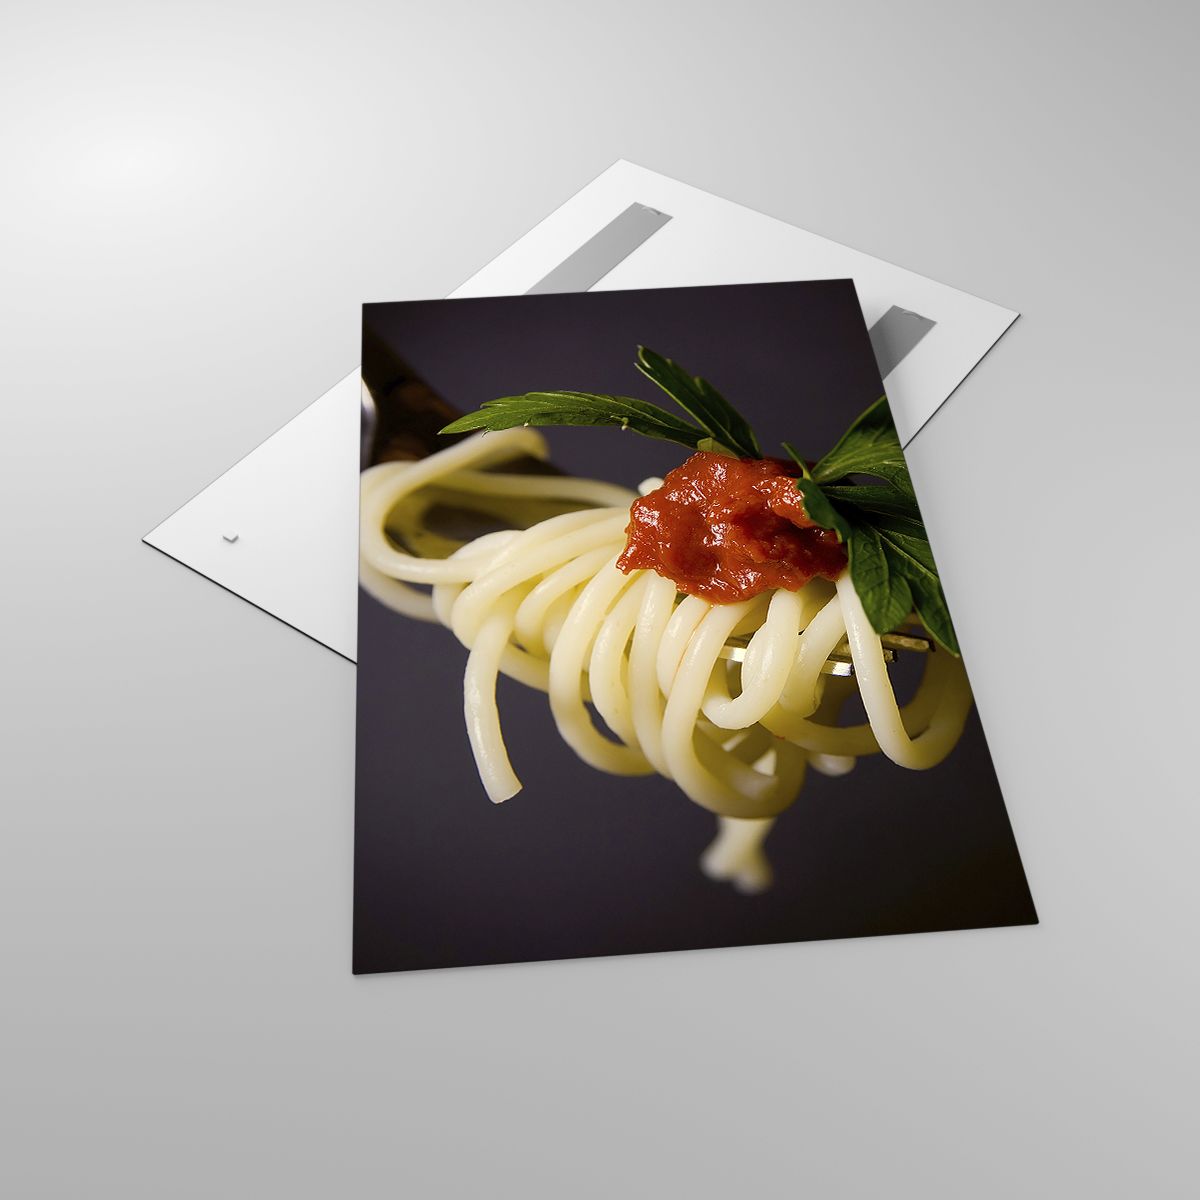 Impression La Gastronomie, Impression Spaghetti, Impression Italie, Impression Pâtes, Impression Culinaire